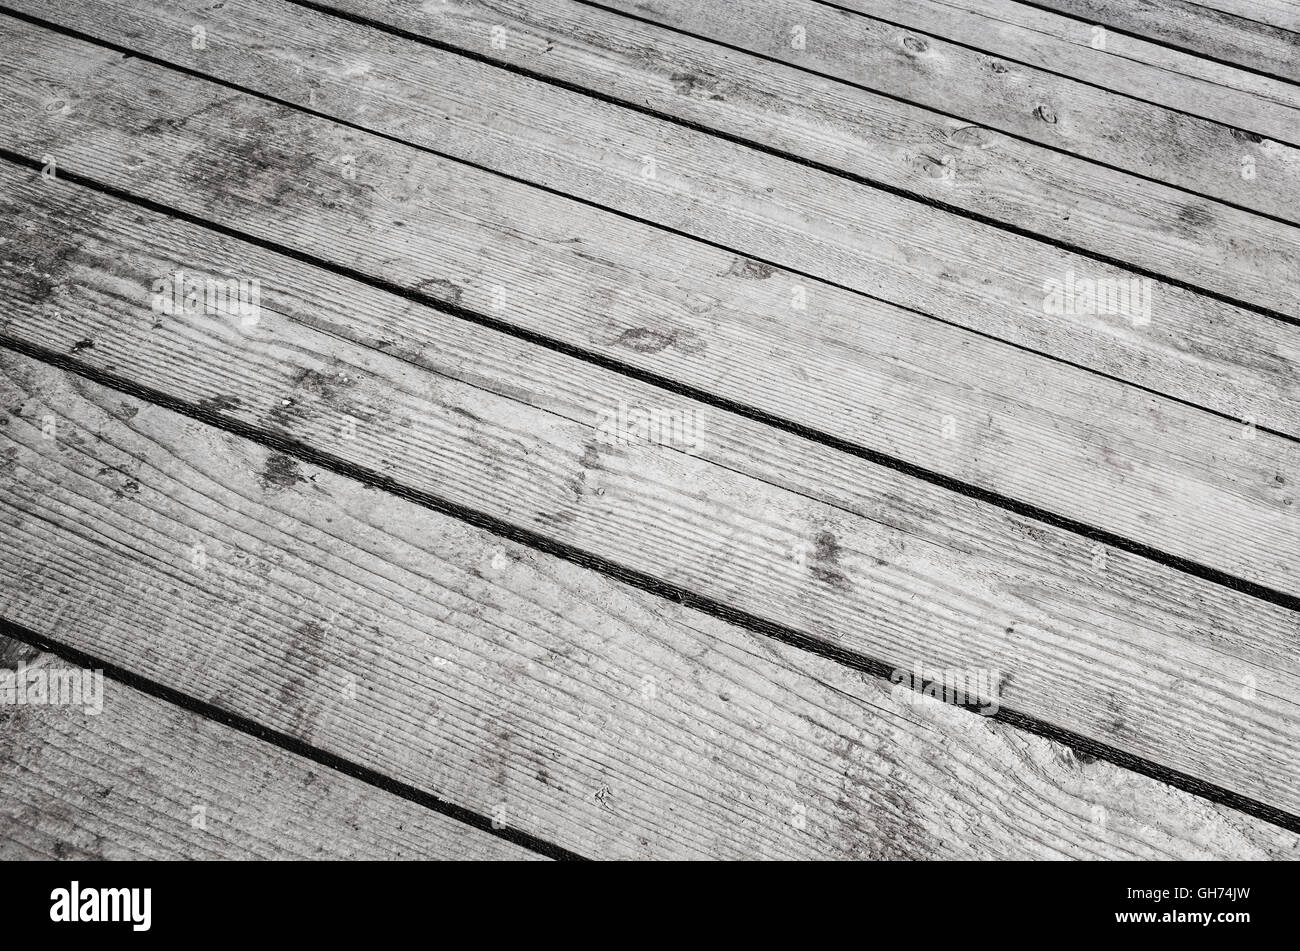 Vieux plancher en bois gris, texture de fond photo détaillée Banque D'Images